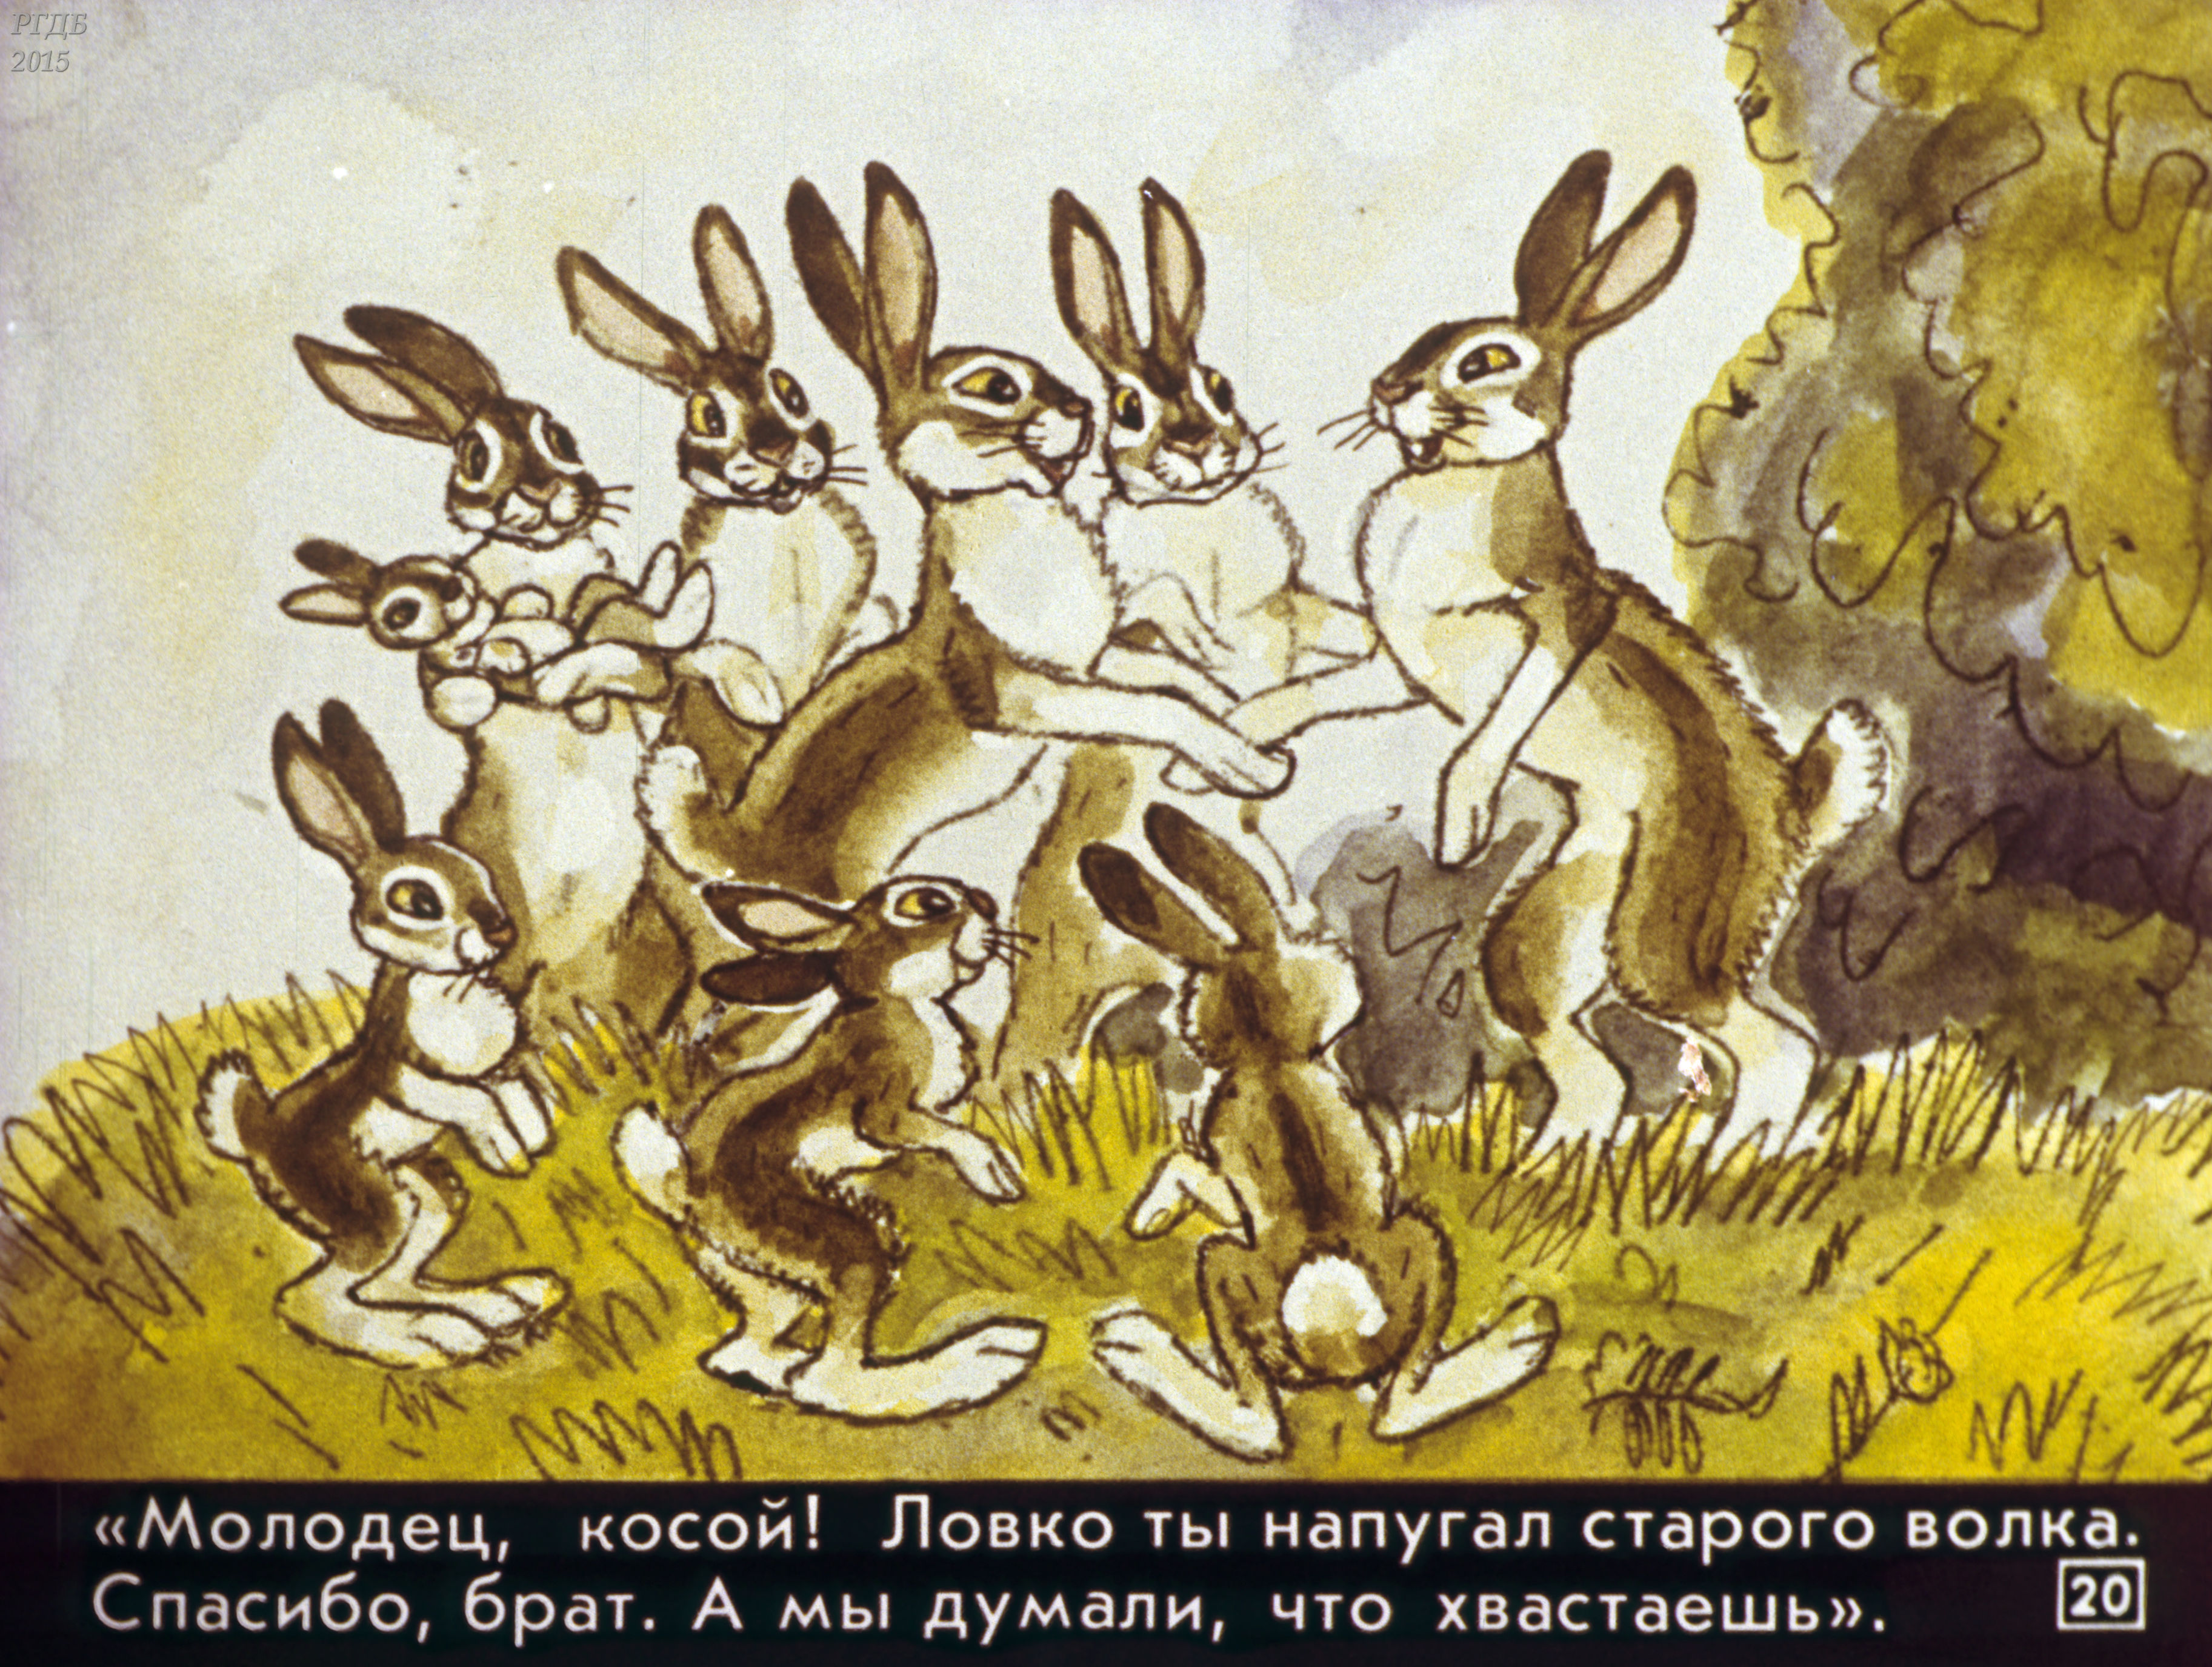 Сказка про храброго зайца косые глаза